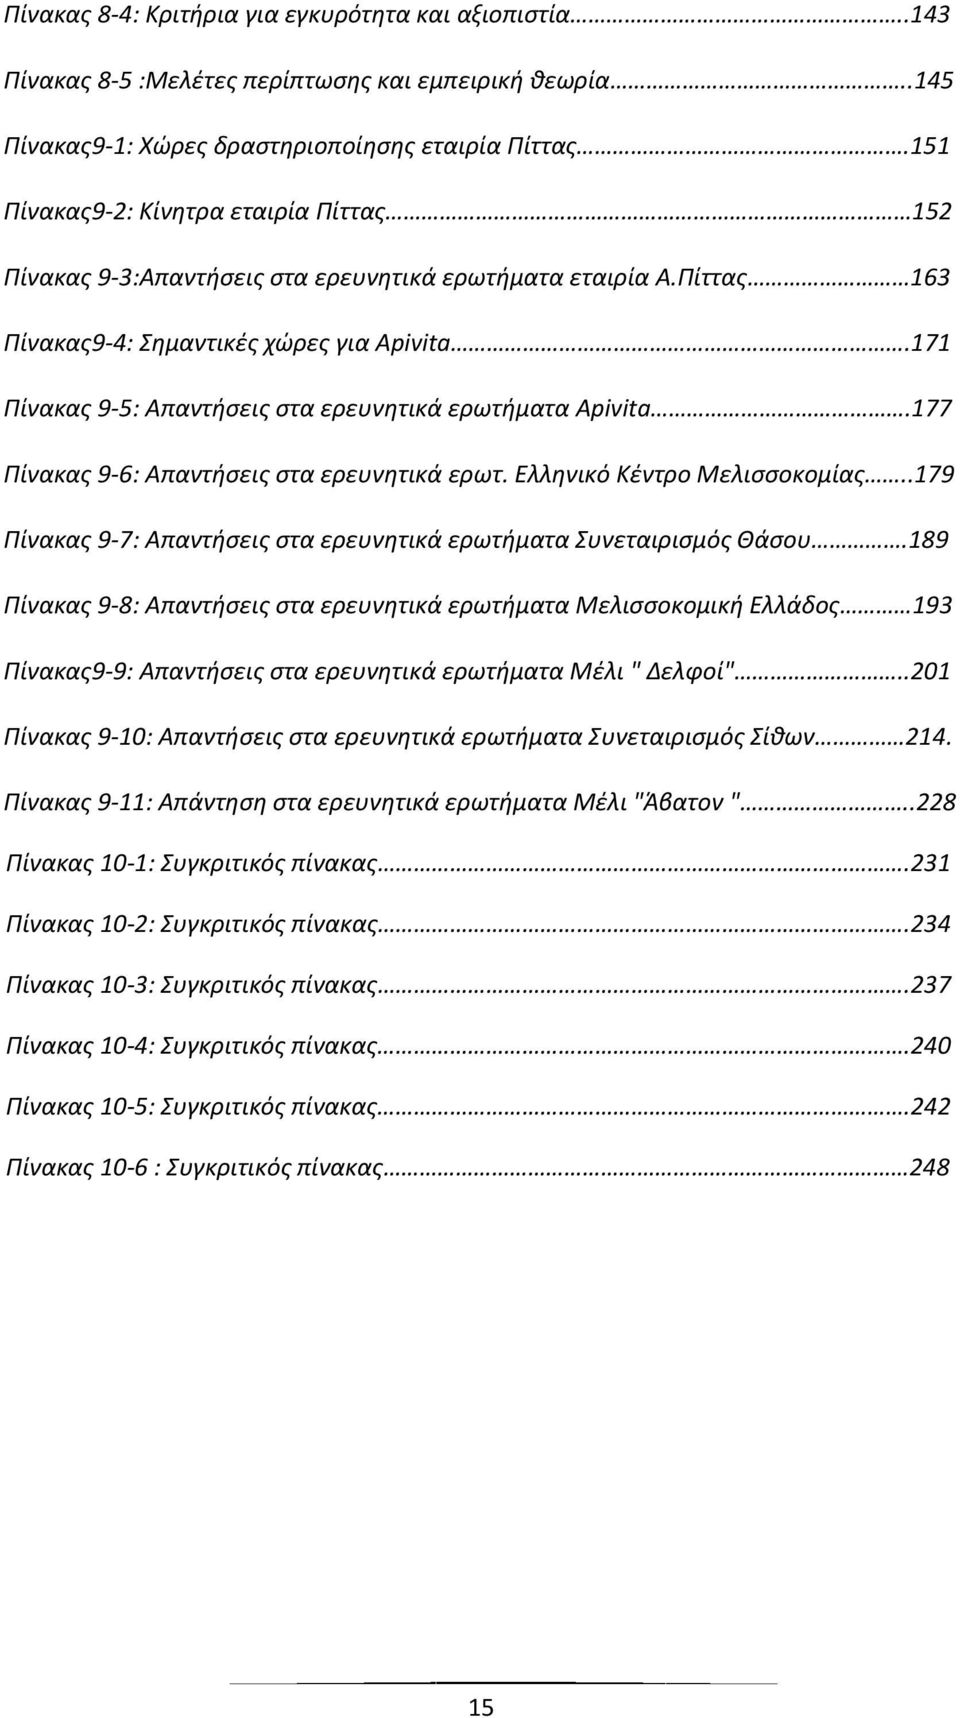 171 Ρίνακασ 9-5: Απαντιςεισ ςτα ερευνθτικά ερωτιματα Apivita.177 Ρίνακασ 9-6: Απαντιςεισ ςτα ερευνθτικά ερωτ. Ελλθνικό Κζντρο Μελιςςοκομίασ.